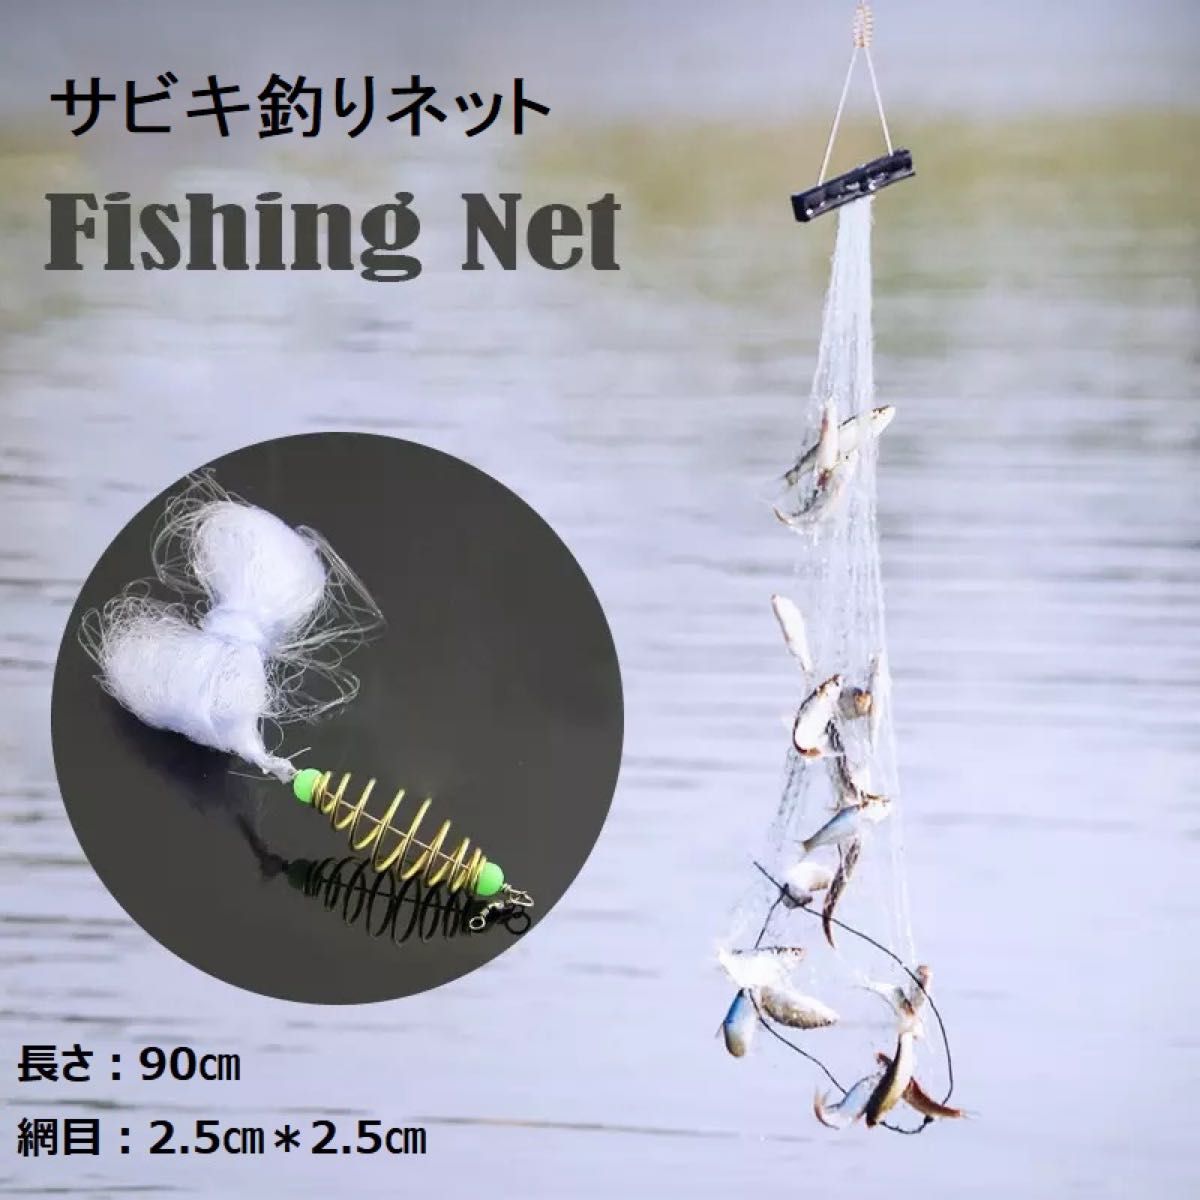 サビキ釣り 釣りネット 6個セット 仕掛け網 爆釣り 定置網 漁具 フィッシング 網 ネット19